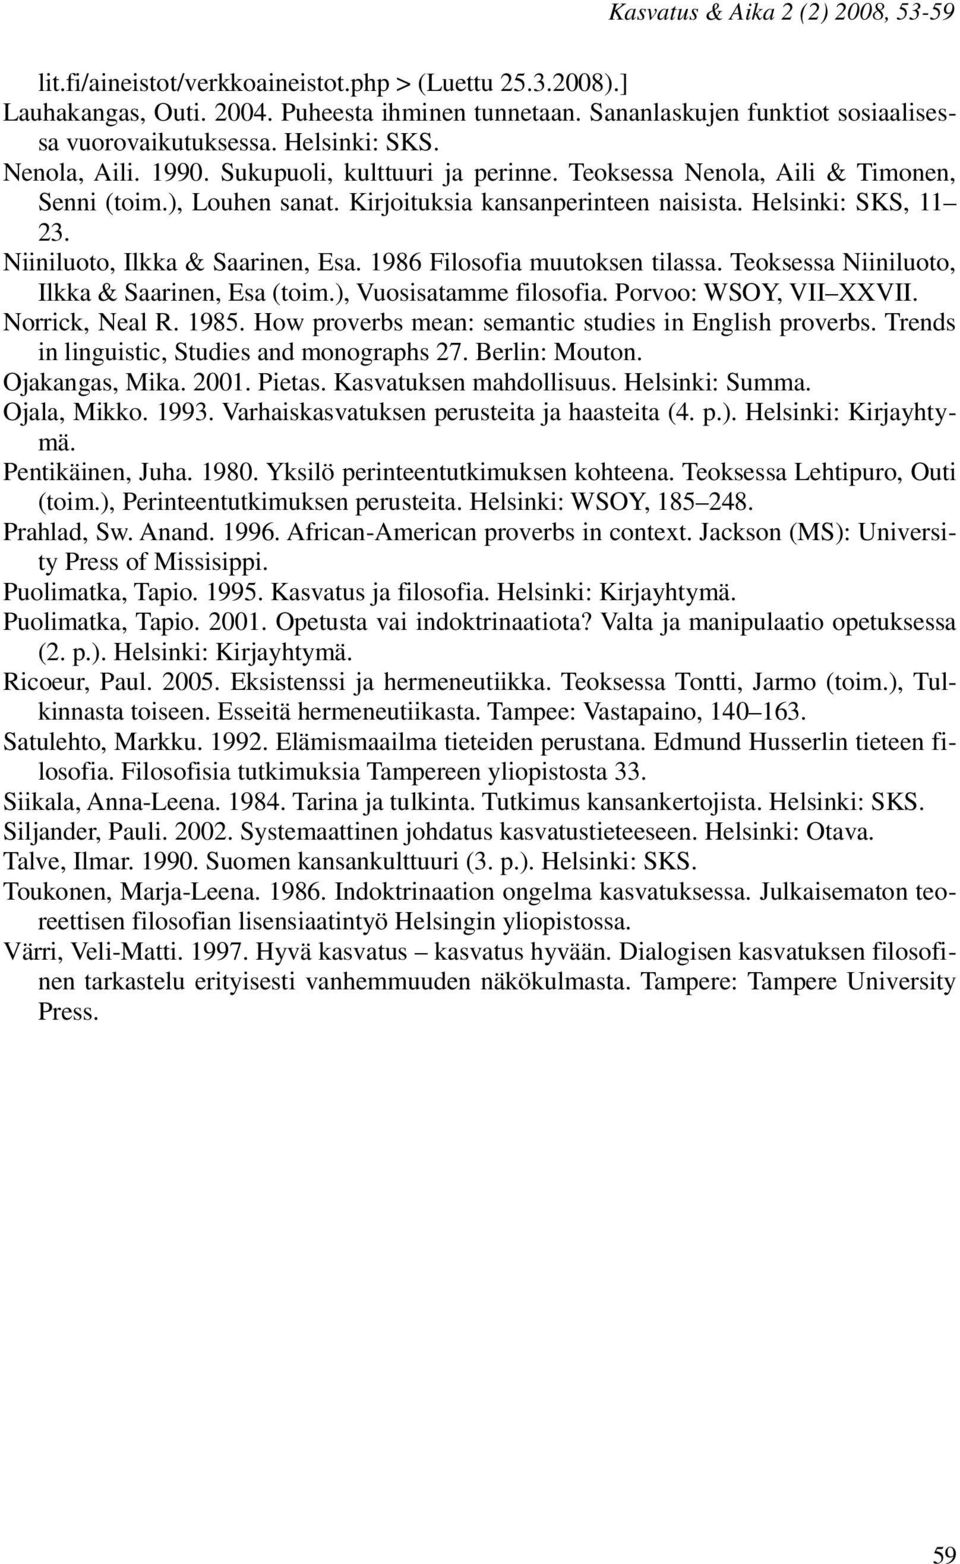 Kirjoituksia kansanperinteen naisista. Helsinki: SKS, 11 23. Niiniluoto, Ilkka & Saarinen, Esa. 1986 Filosofia muutoksen tilassa. Teoksessa Niiniluoto, Ilkka & Saarinen, Esa (toim.